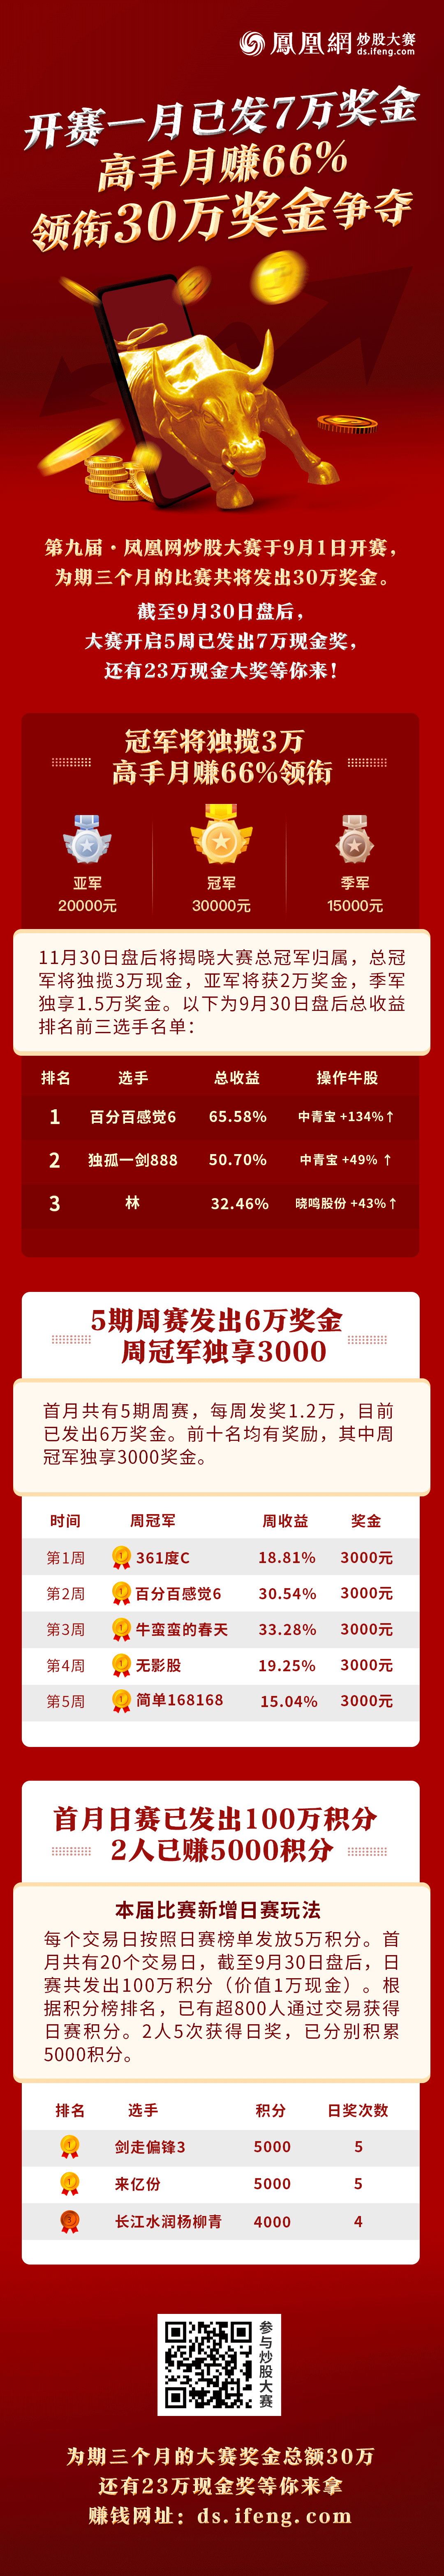 炒股大赛搜狐(凤凰网炒股大赛)
